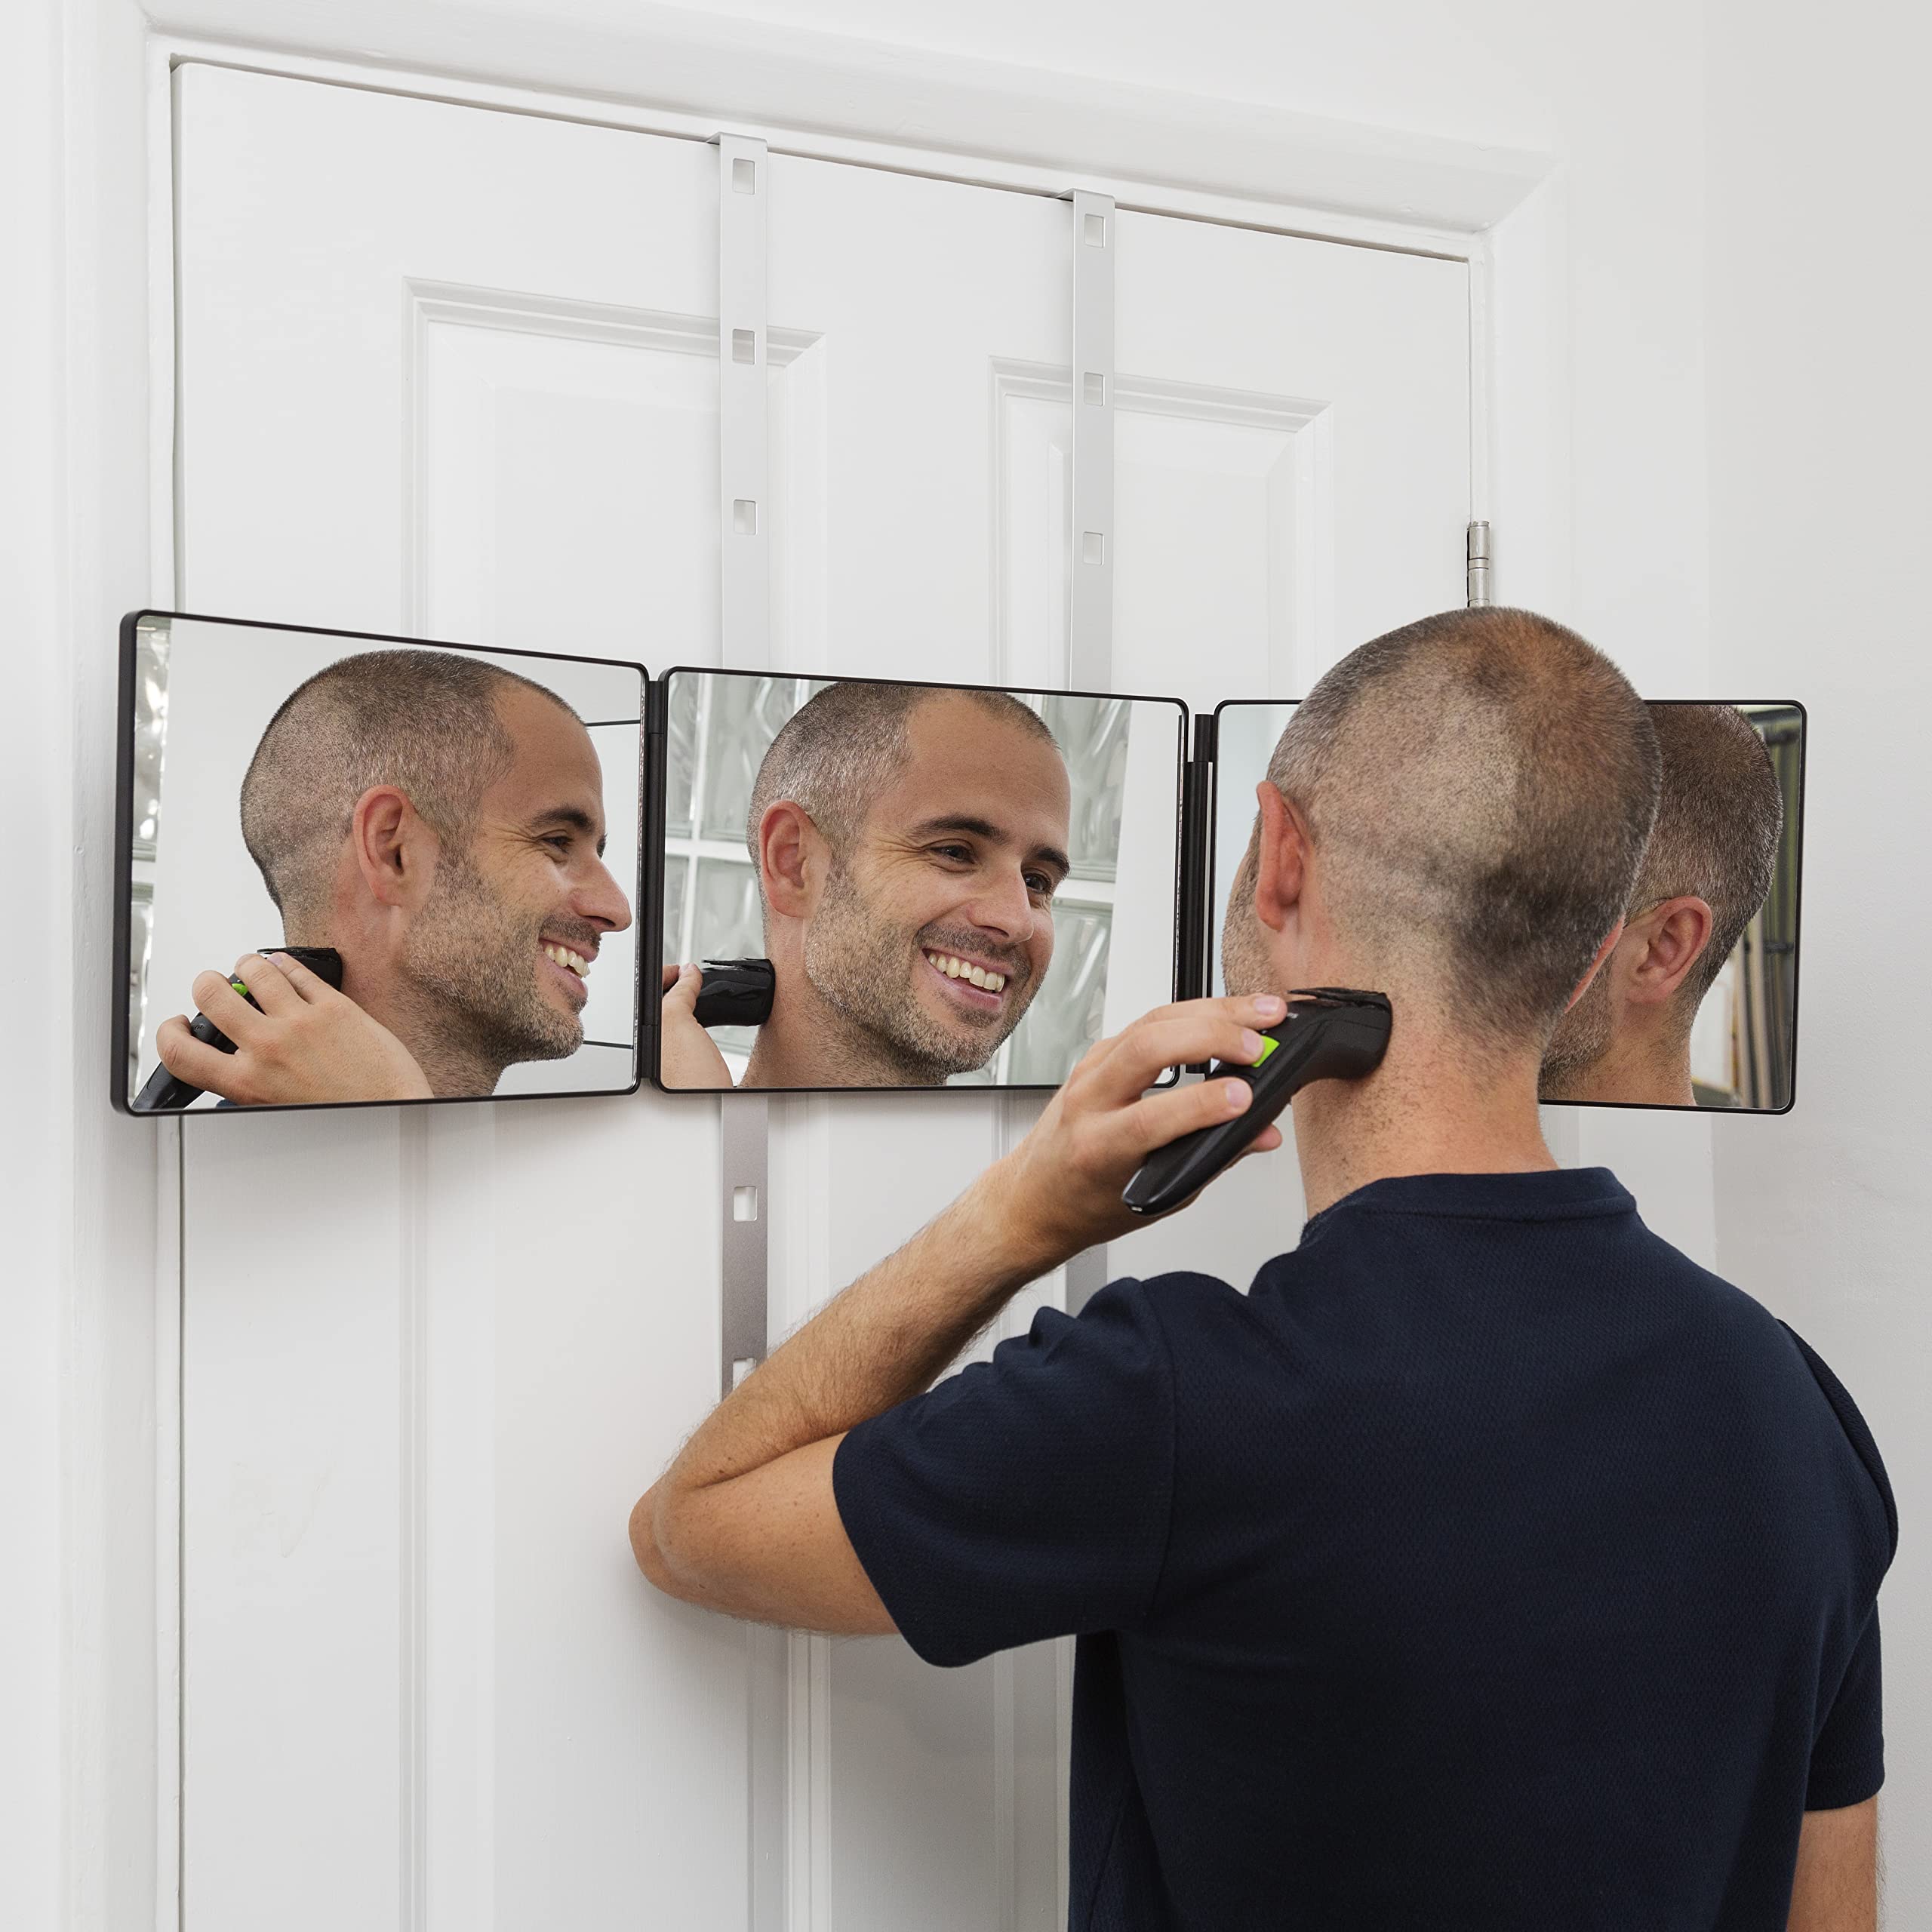 Ella Bella 3 Way Mirror for Hair cutting A 360 Mirror A Self Haircut Mirror  Home Styling A Barber Mirror A Haircut Mirror with Trifold A Se